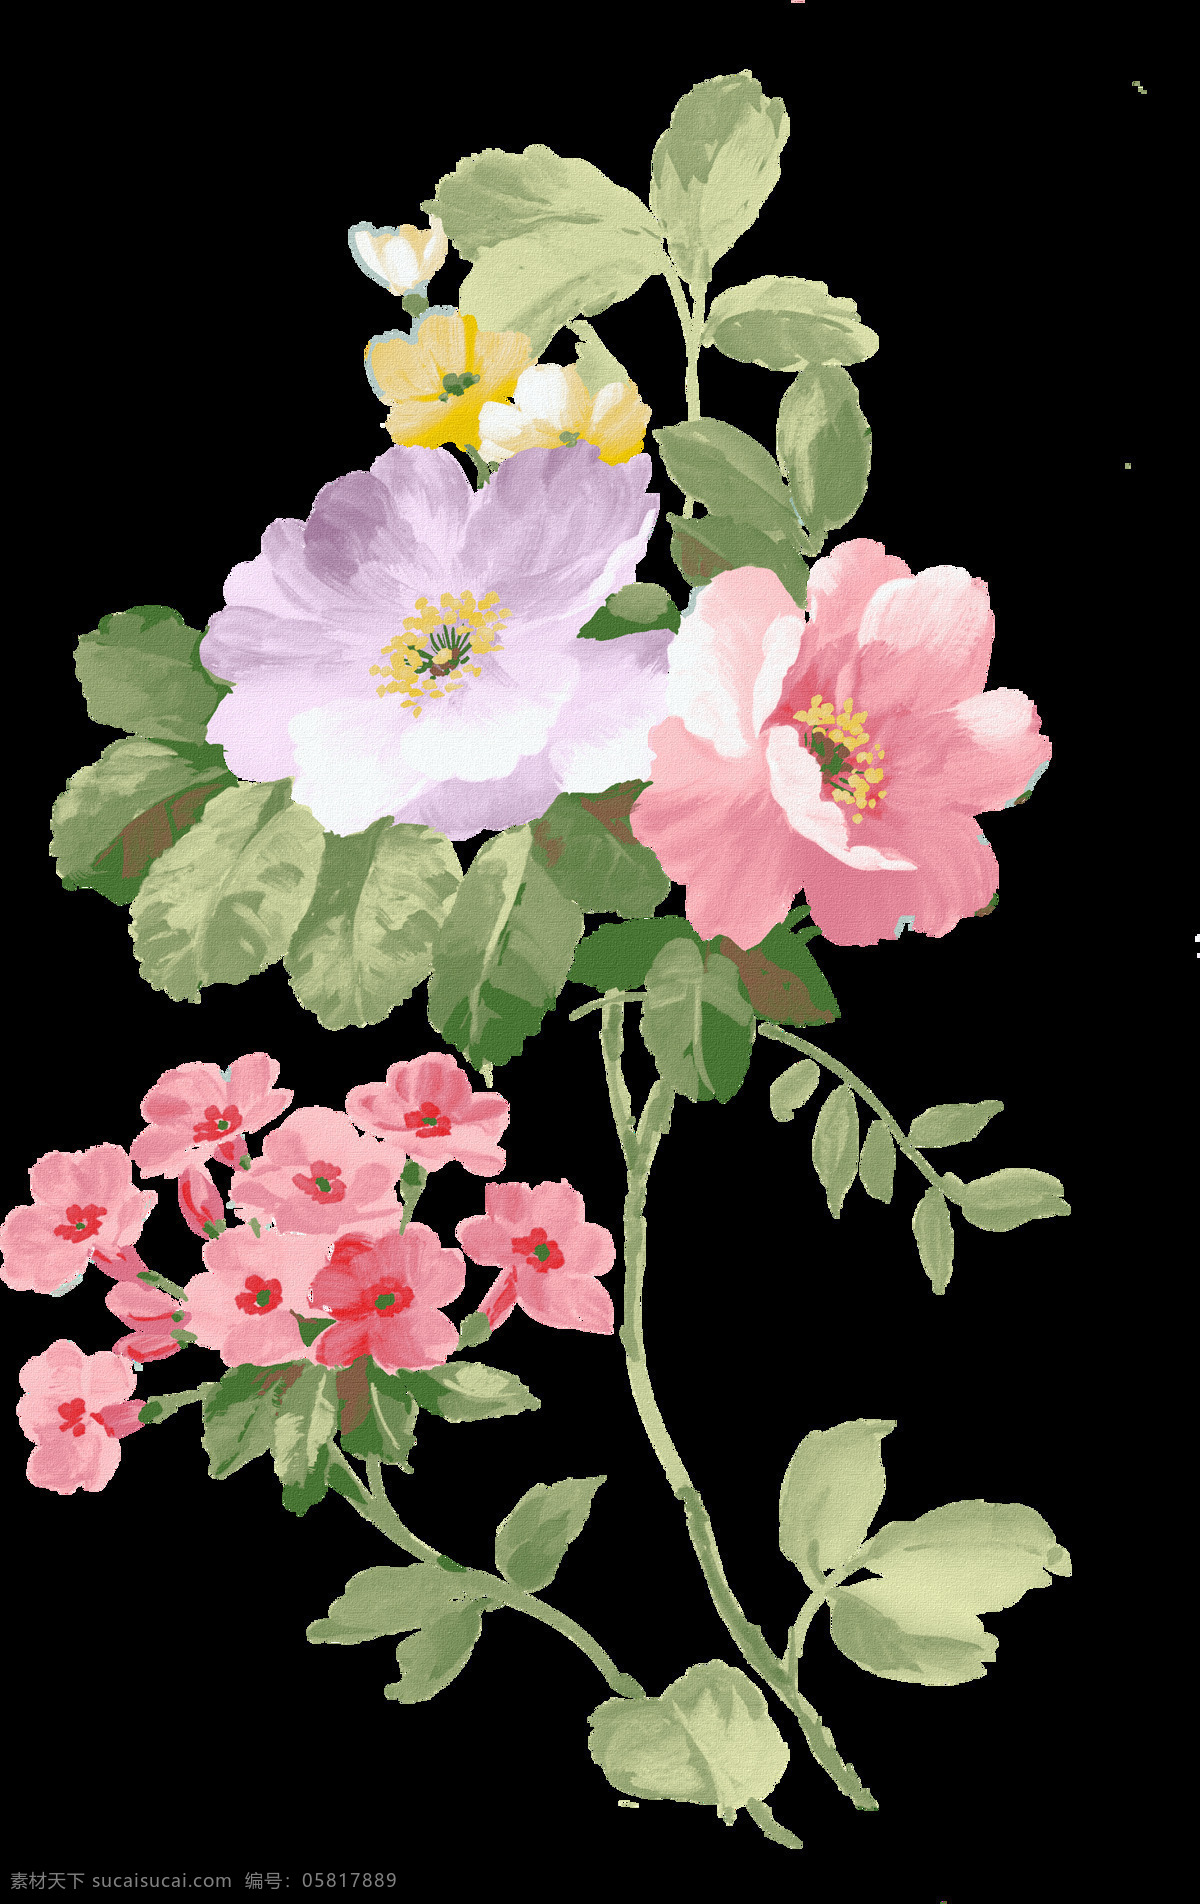 手绘花卉 手绘花朵 绿叶 复古花朵 花卉 静物花卉 绘画花朵 绘画书法 文化艺术 花朵素材